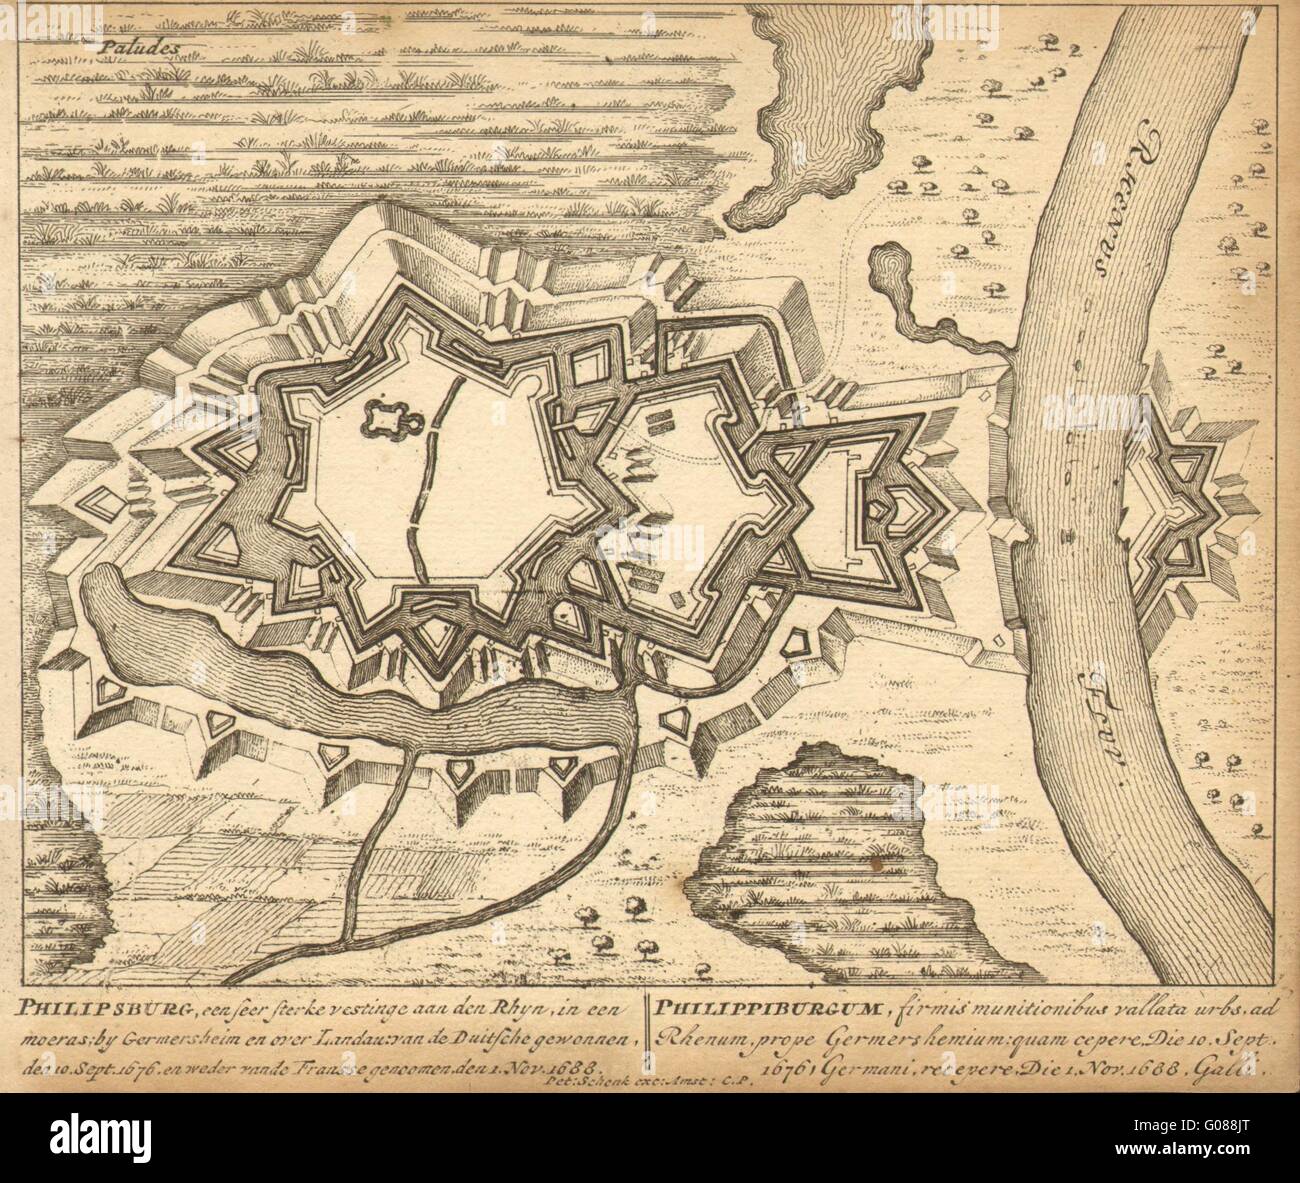 PHILIPPSBURG: Ciudad del plan por Schenk. Escasos. Alemania, 1710 mapa antiguo Foto de stock